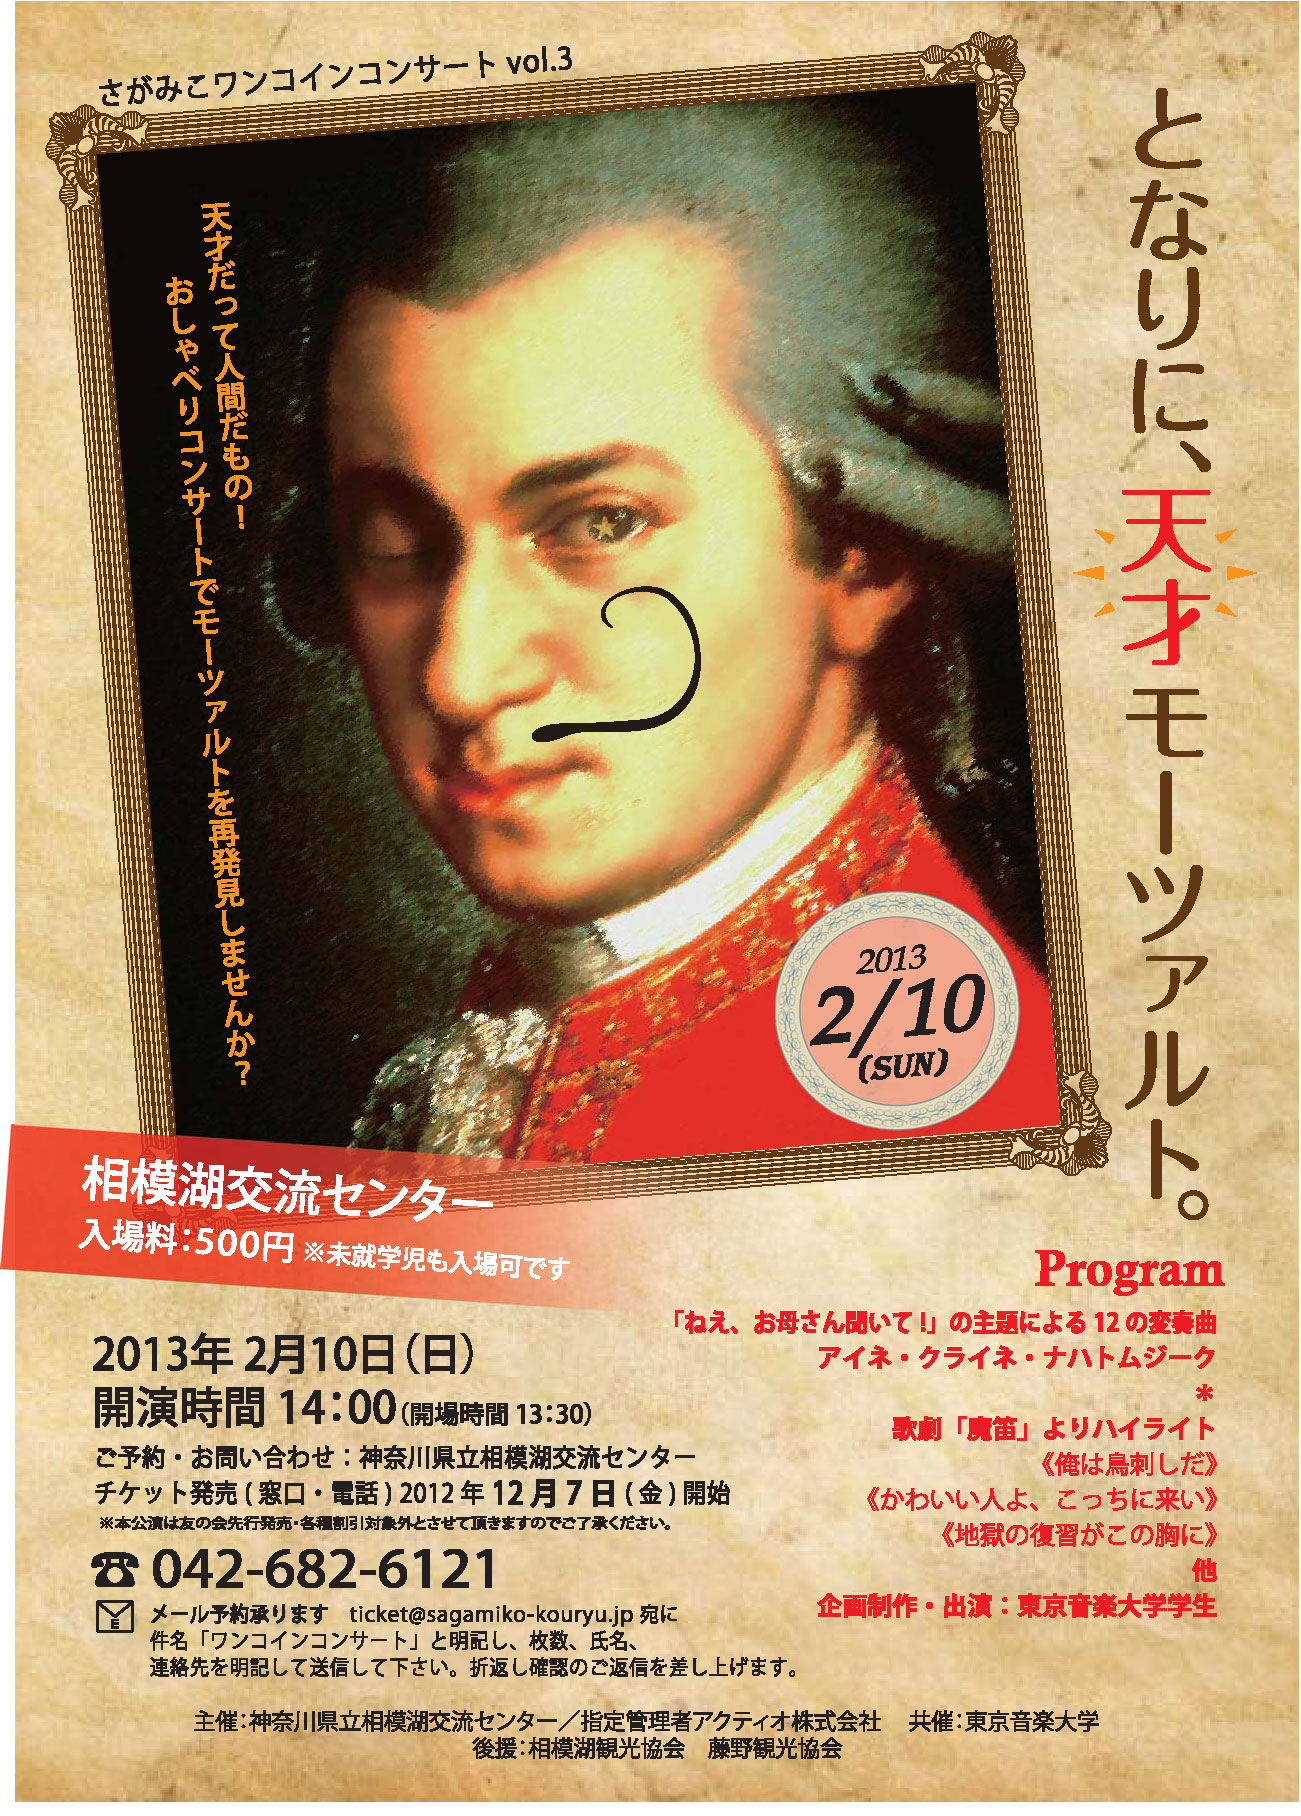 さがみこワンコインコンサート「となりに、天才モーツァルト。」